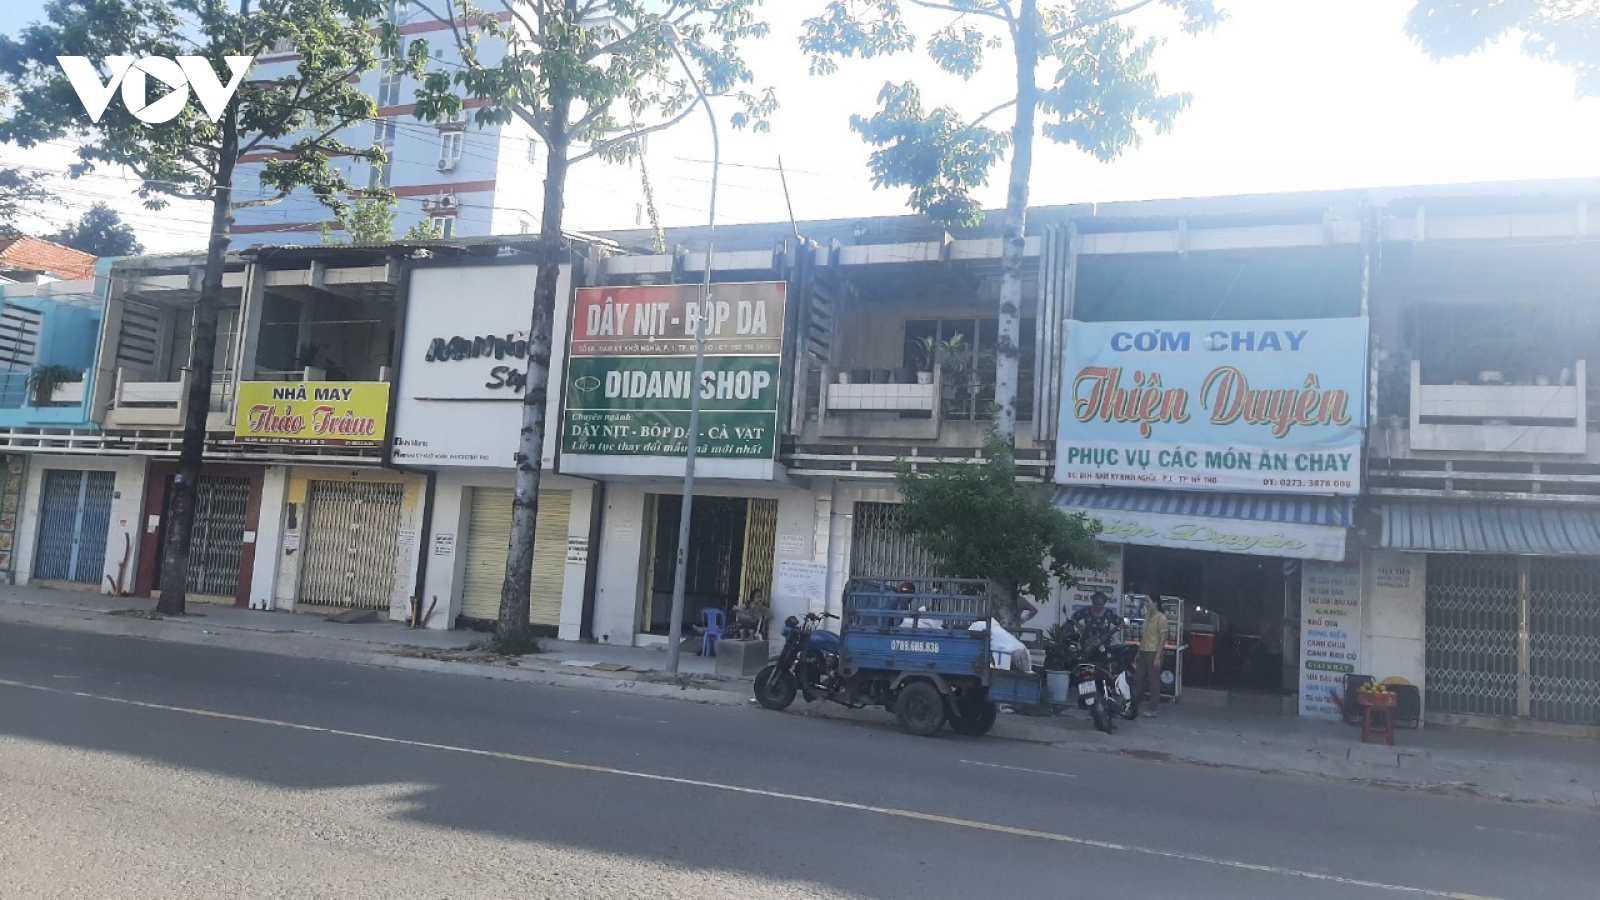 2/11 căn nhà công vụ cho thuê sai mục đích ở Tiền Giang đã hoàn trả lại nhà